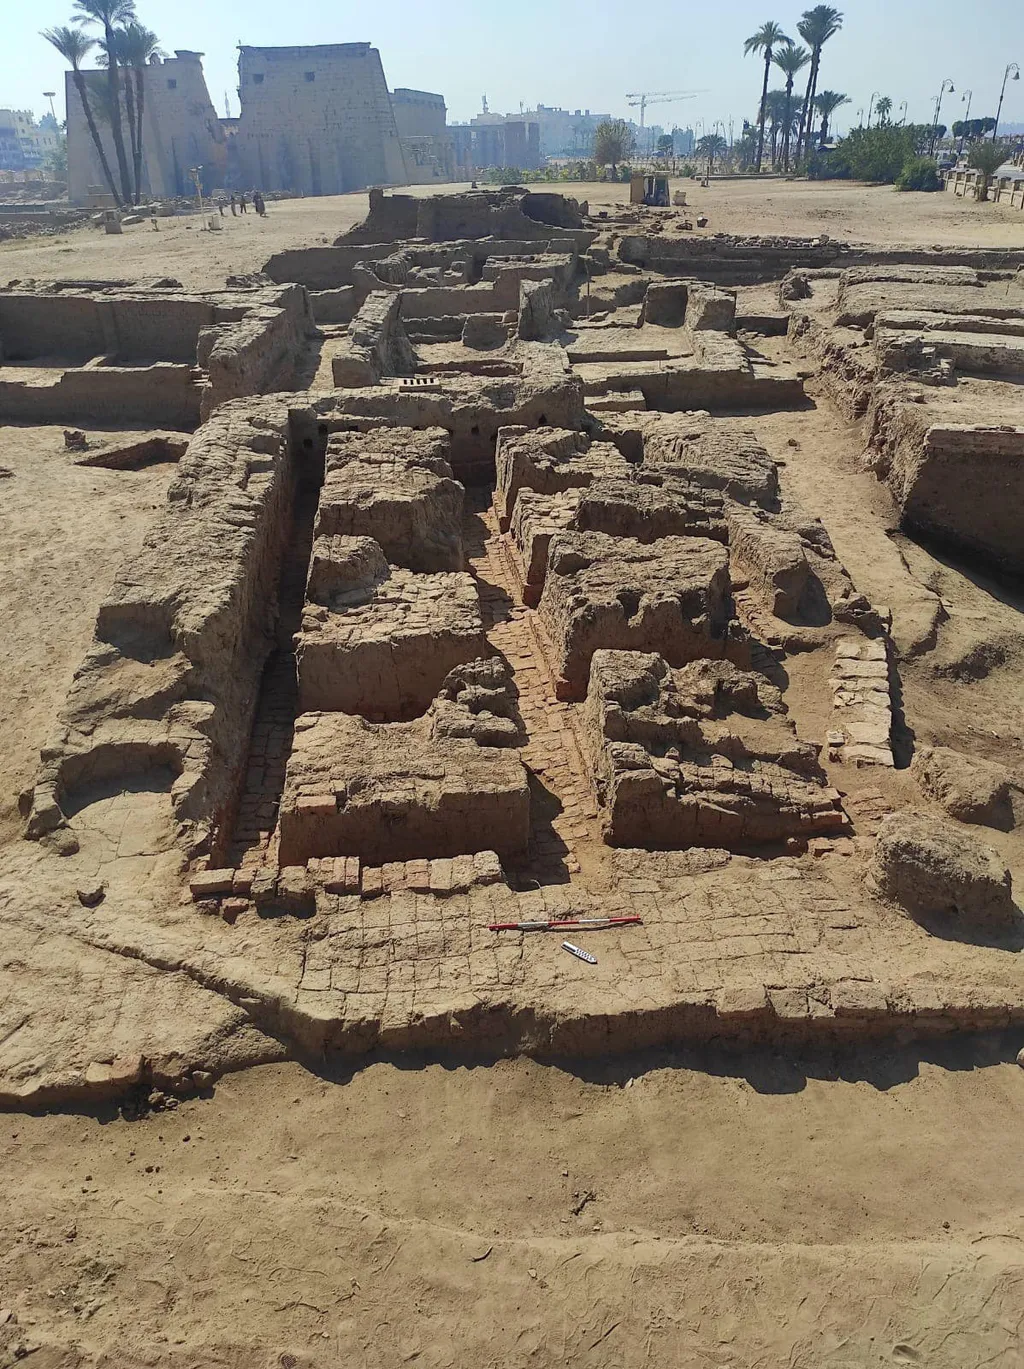 Estruturas da antiga cidade romana em Luxor, Tiba: ao fundo, o Templo de Luxor (Imagem: Ministry of Tourism and Antiquities)